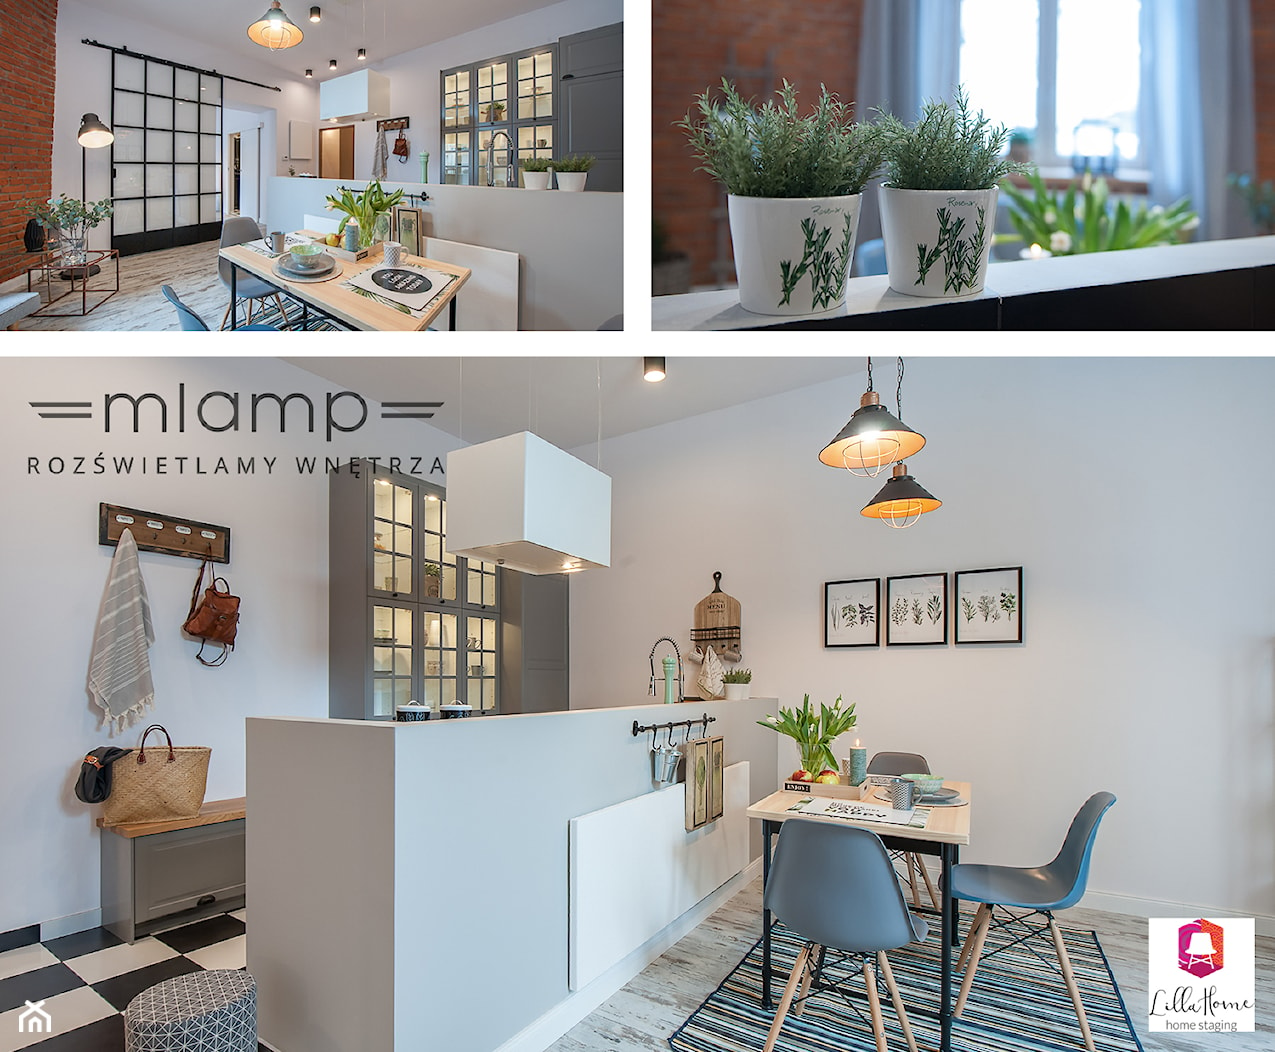 Eklektyczne mieszkanie z industrialnym oświetleniem - Jadalnia, styl nowoczesny - zdjęcie od =mlamp.pl= | rozświetlamy wnętrza - Homebook